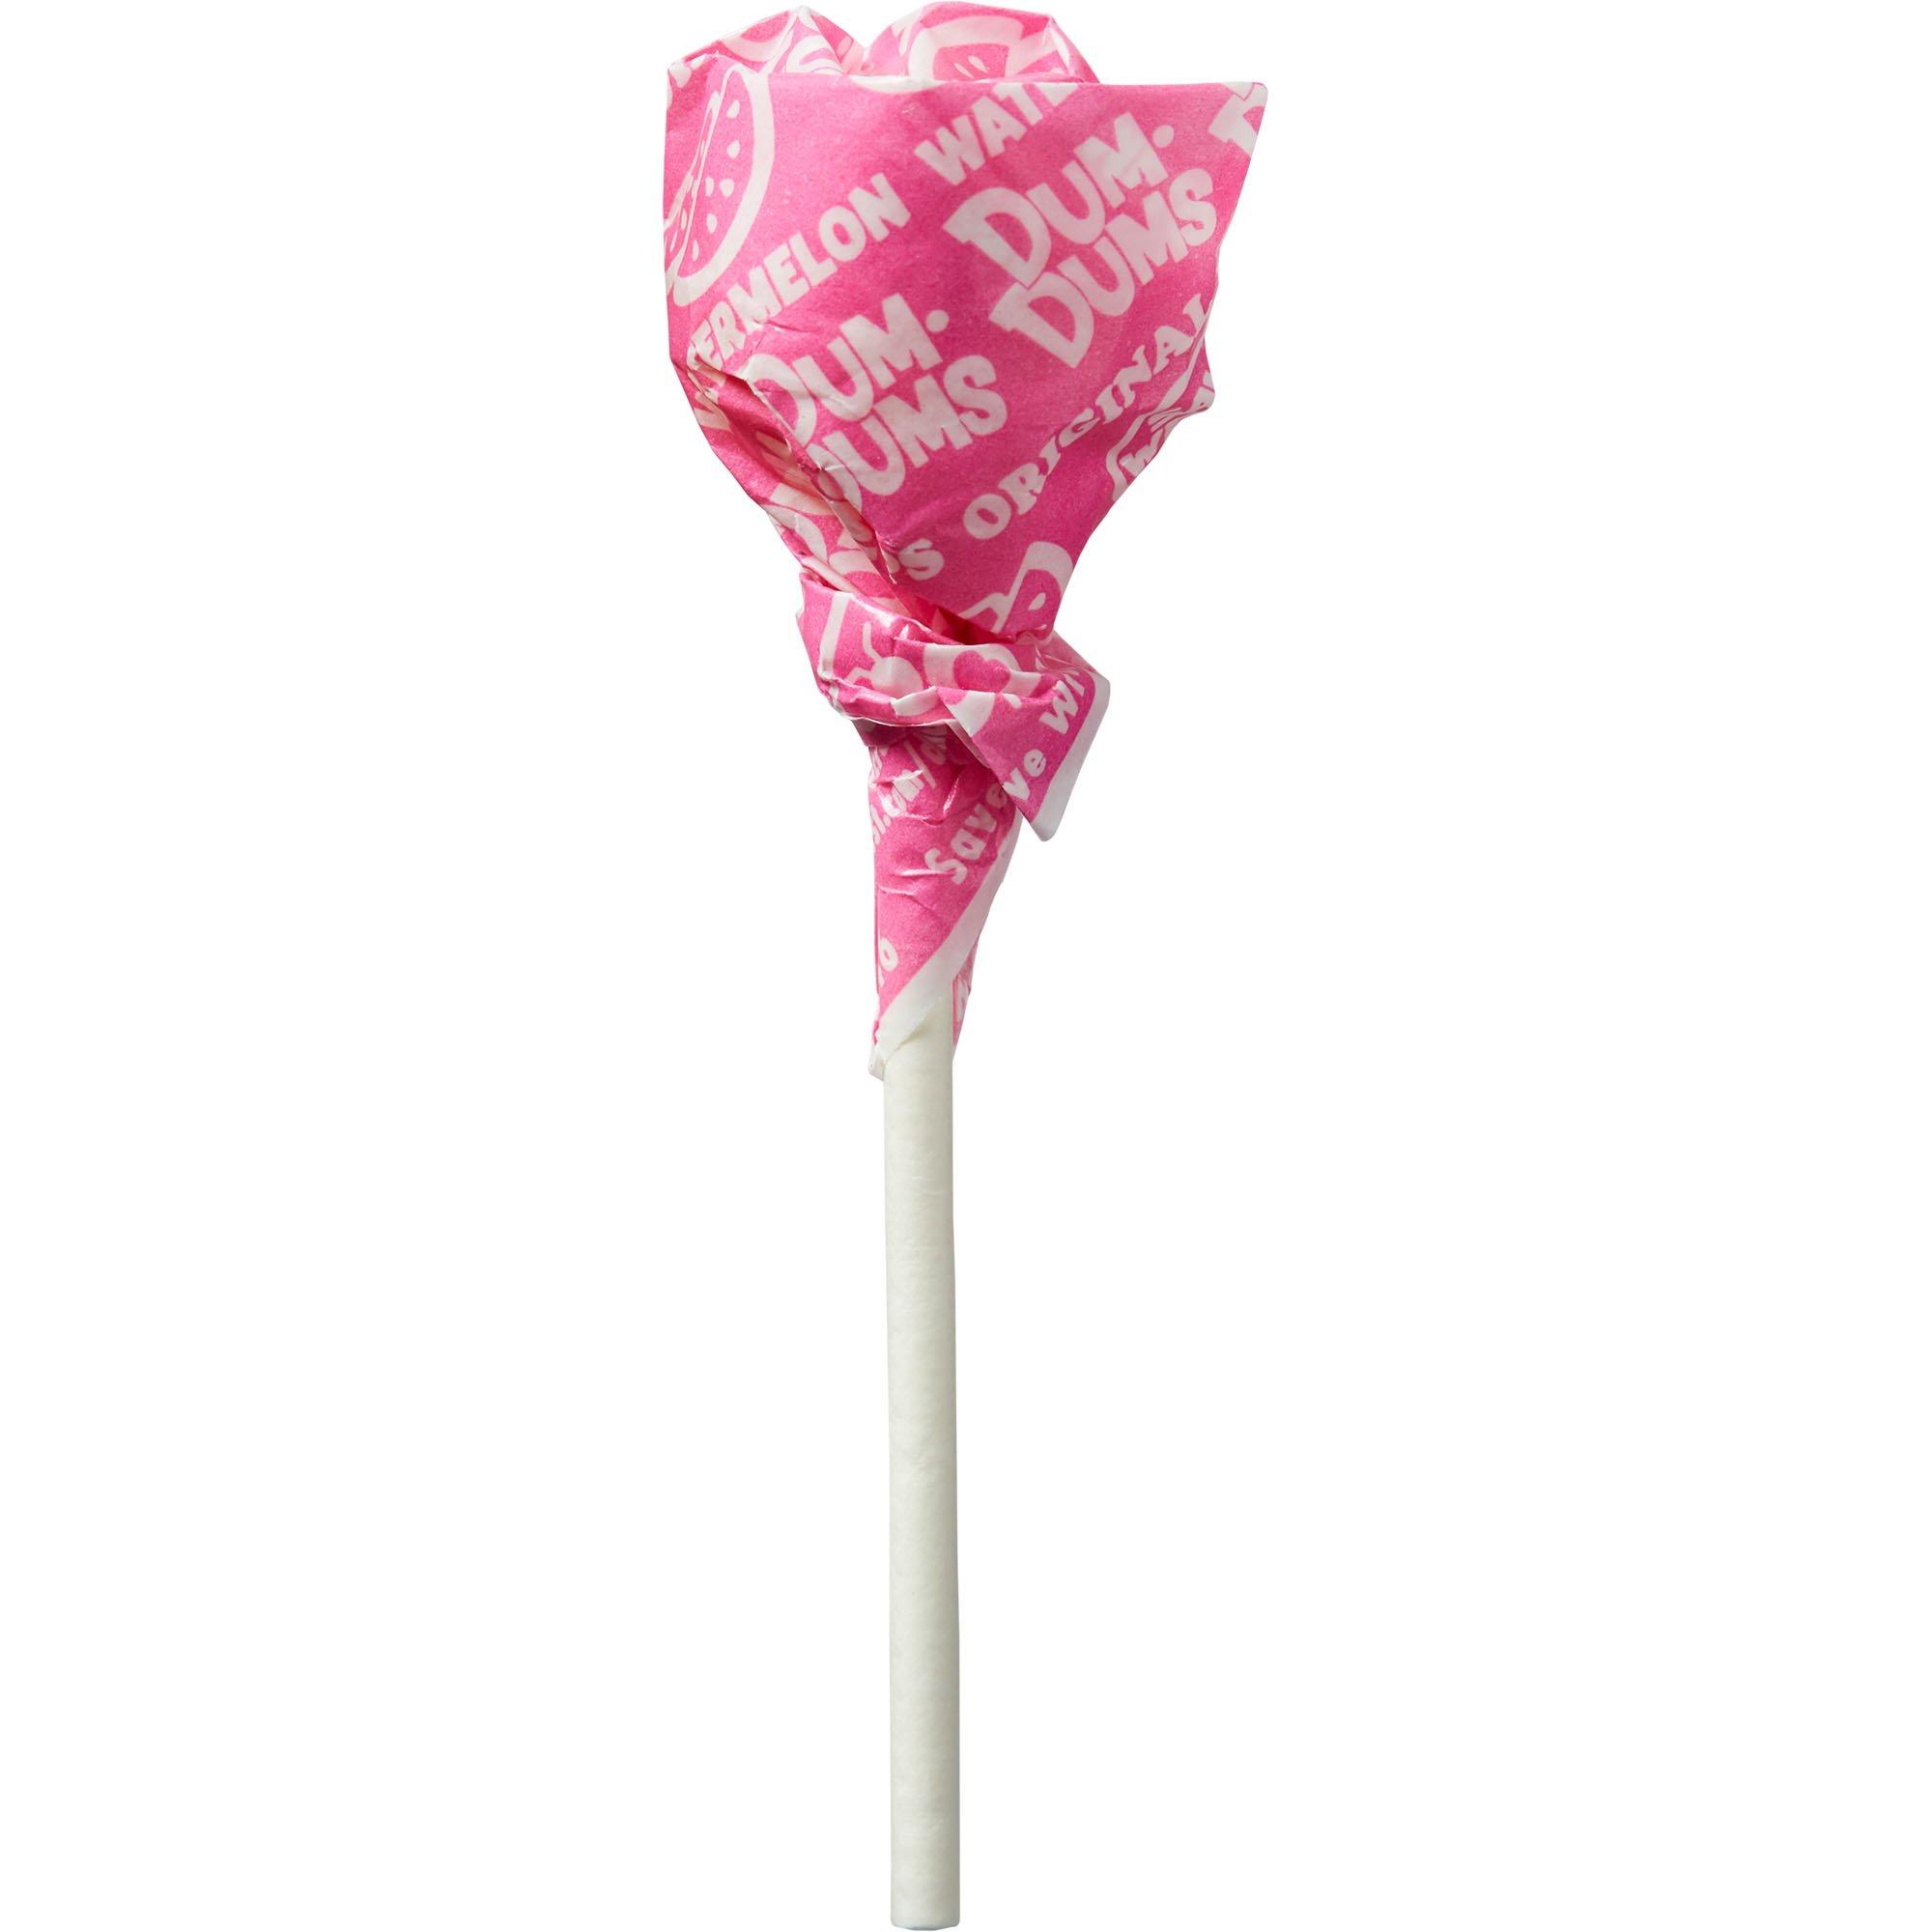 Bright Pink Dum Dums Lollipops, 80pc - Watermelon Flavor